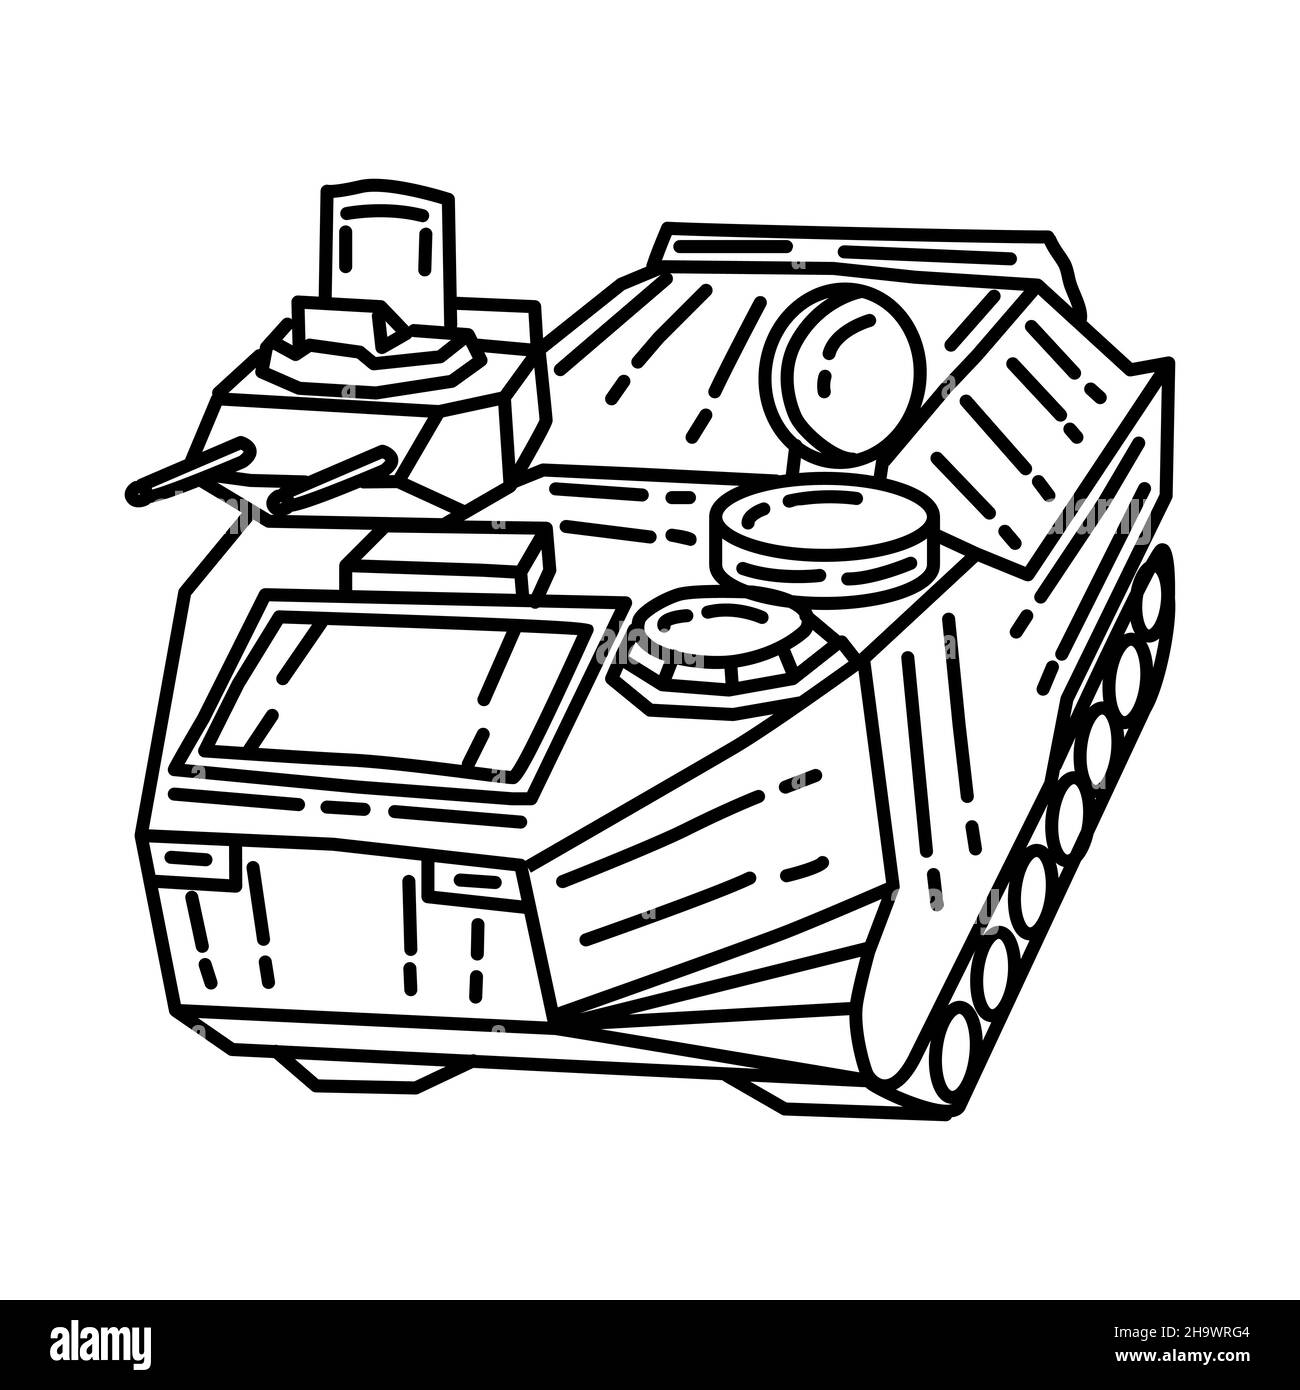 Naval Amphibious Assault veicolo parte del corpo militare e Marine Equipments disegno a mano icona set Vector Illustrazione Vettoriale